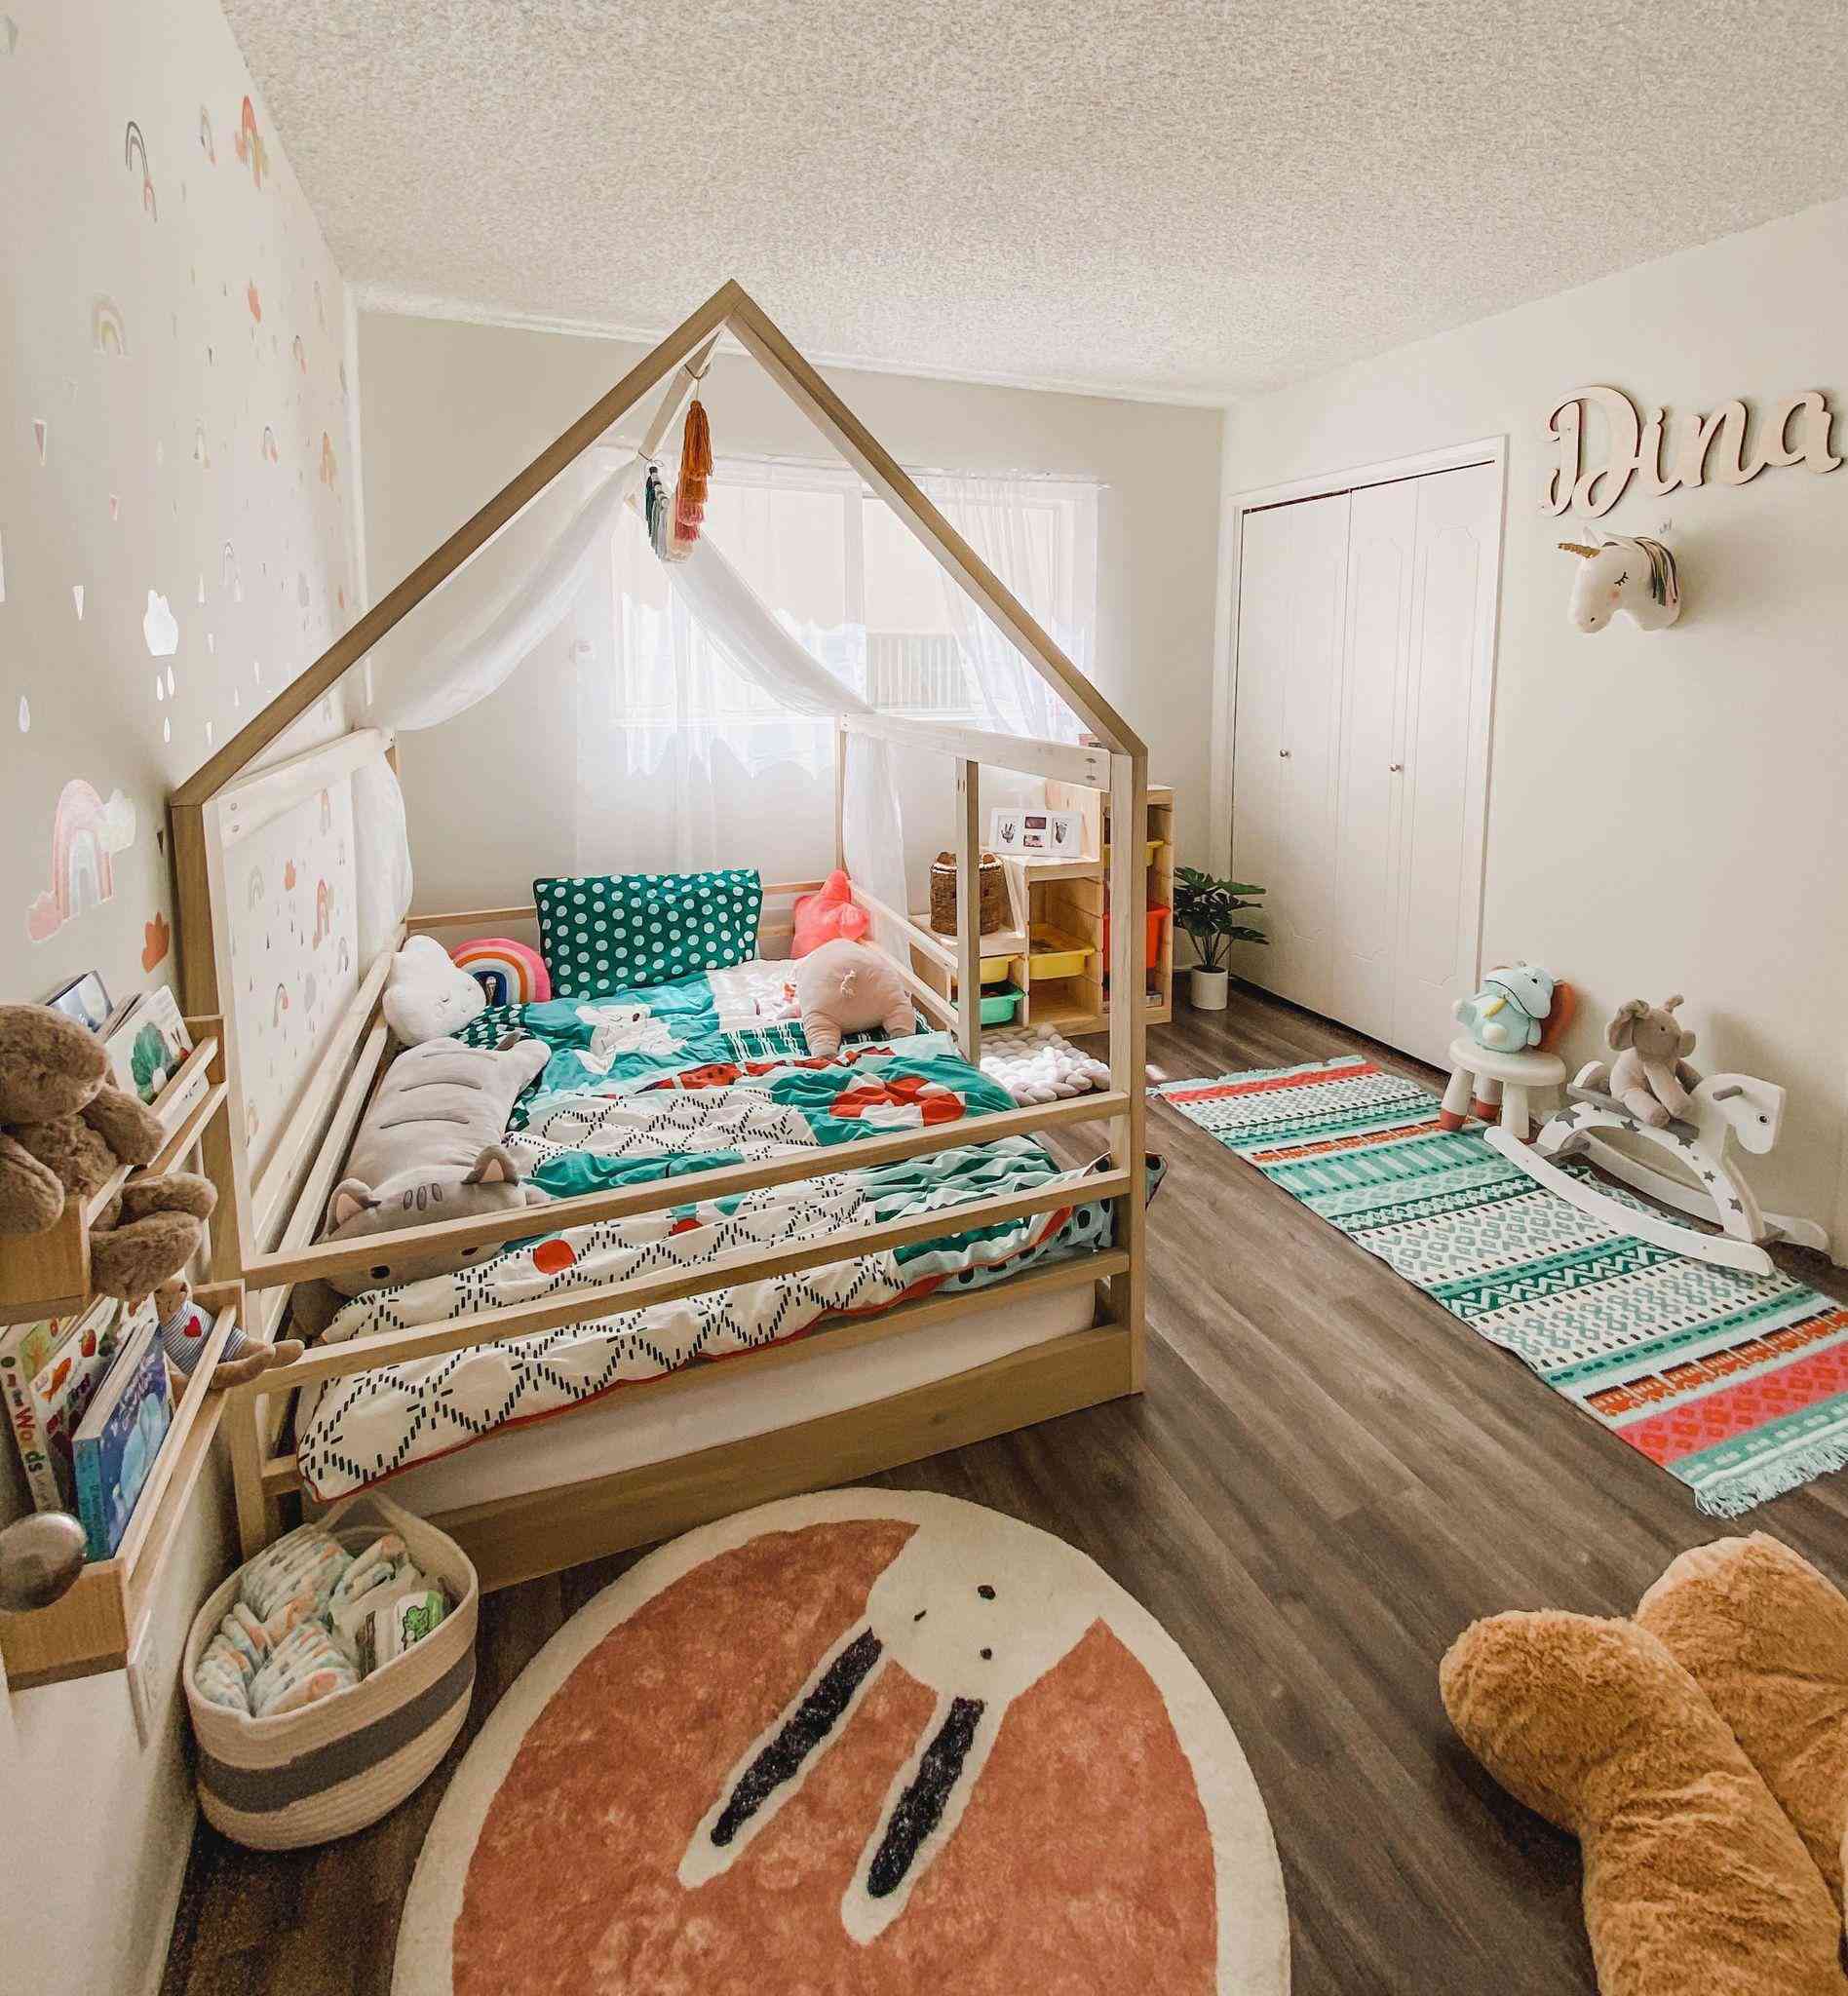 Mẹ trẻ 26 tuổi tự tay thiết kế phòng ngủ cho con gái khiến nhiều người mê mẩn - 1